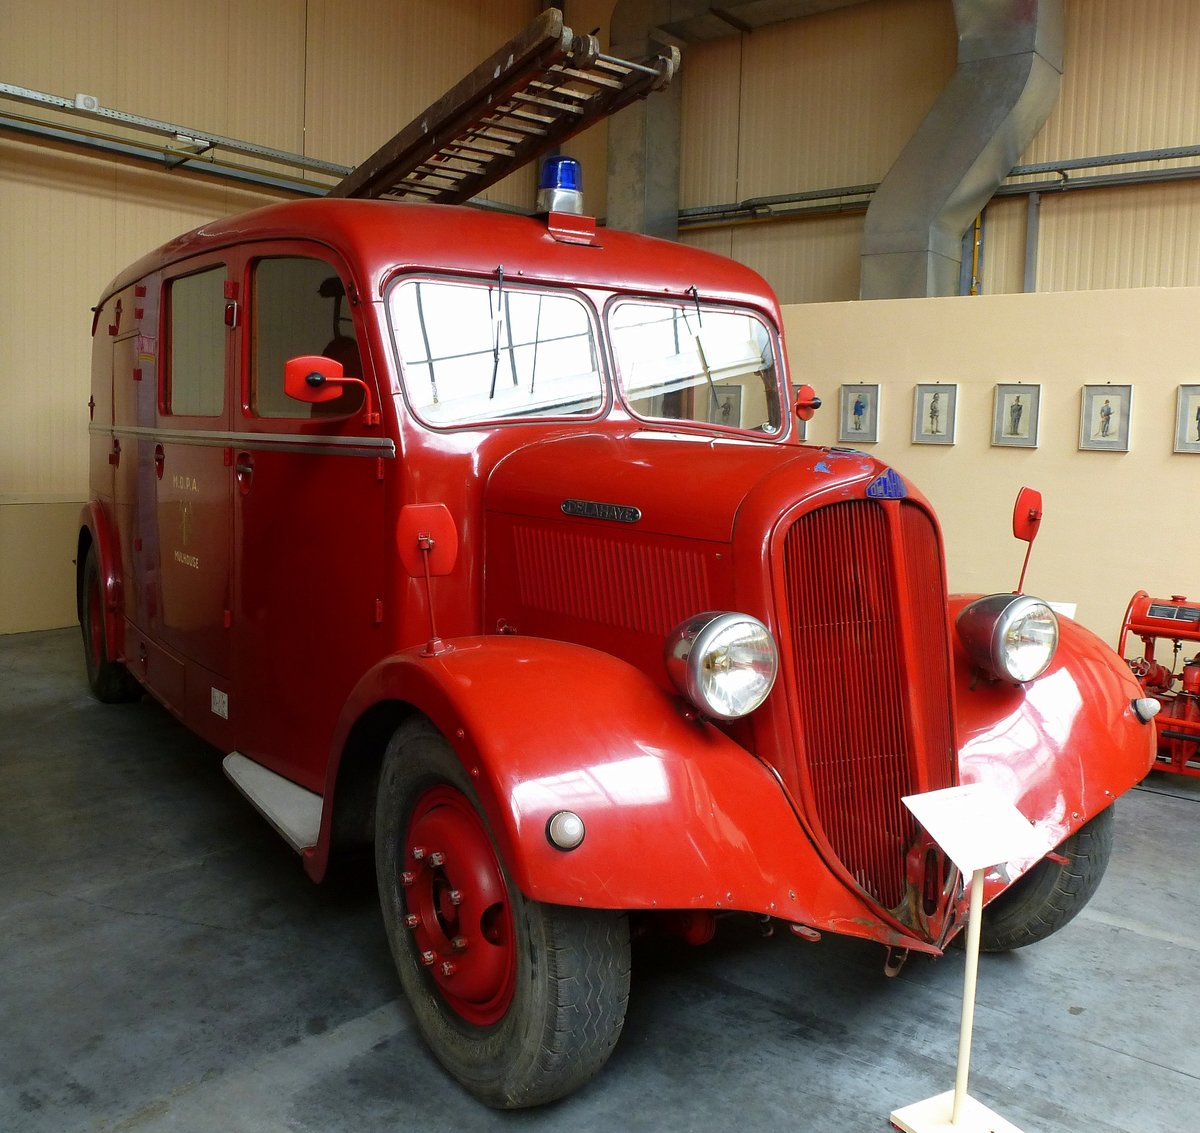 Delahaye 103 AP, Feuerwehrmannschaftswagen mit 12 Pltzen, ausgestellt im Feuerwehrmuseum in Vieux-Ferrette (Altenpfirt) im Elsa, Mai 2016